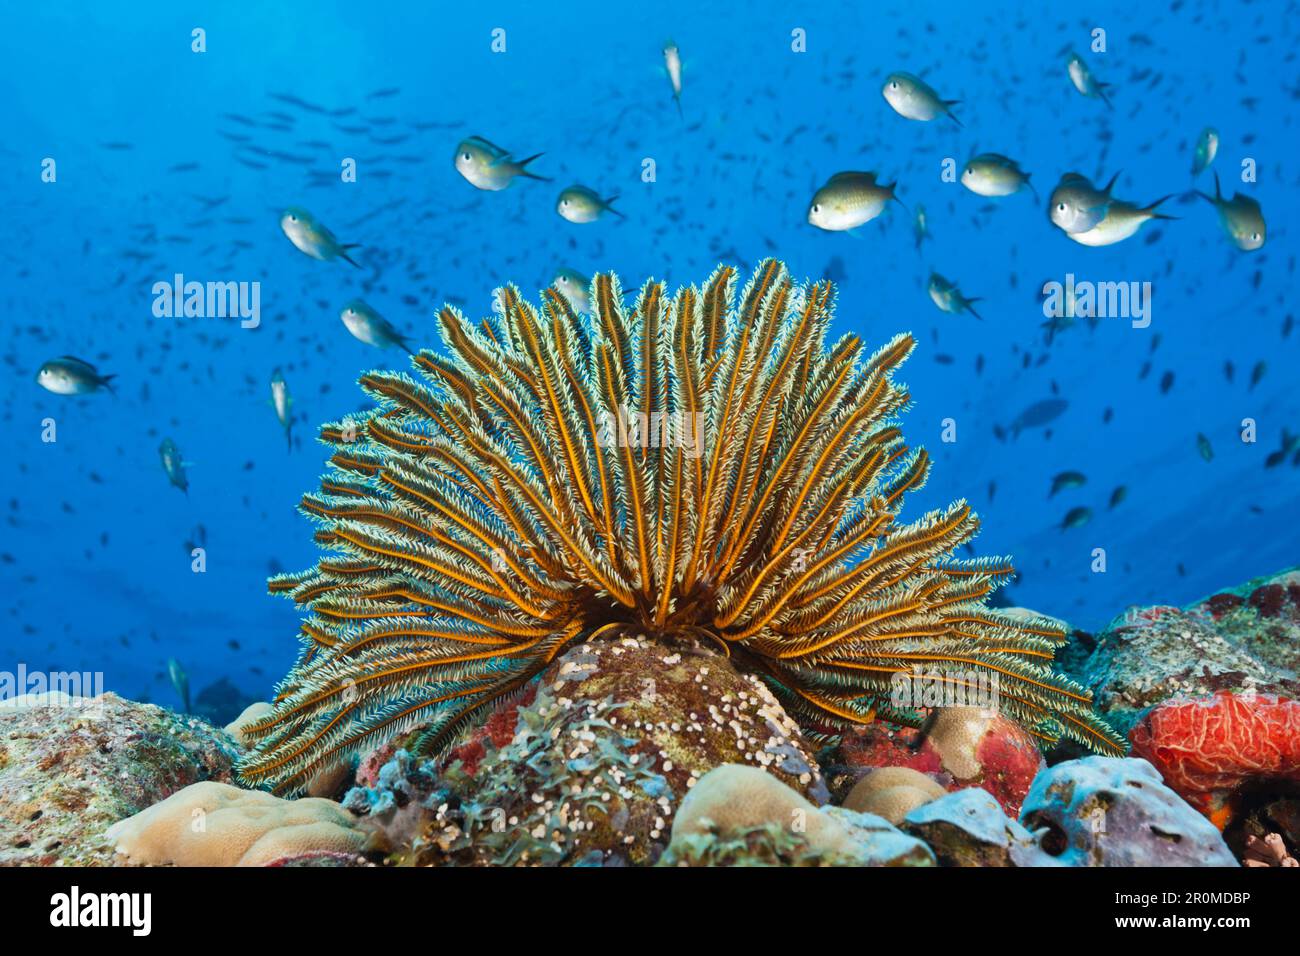 Hair star on the reef, Comaster schlegeli, Tufi, Salomon Lake, Papua New Guinea Stock Photo